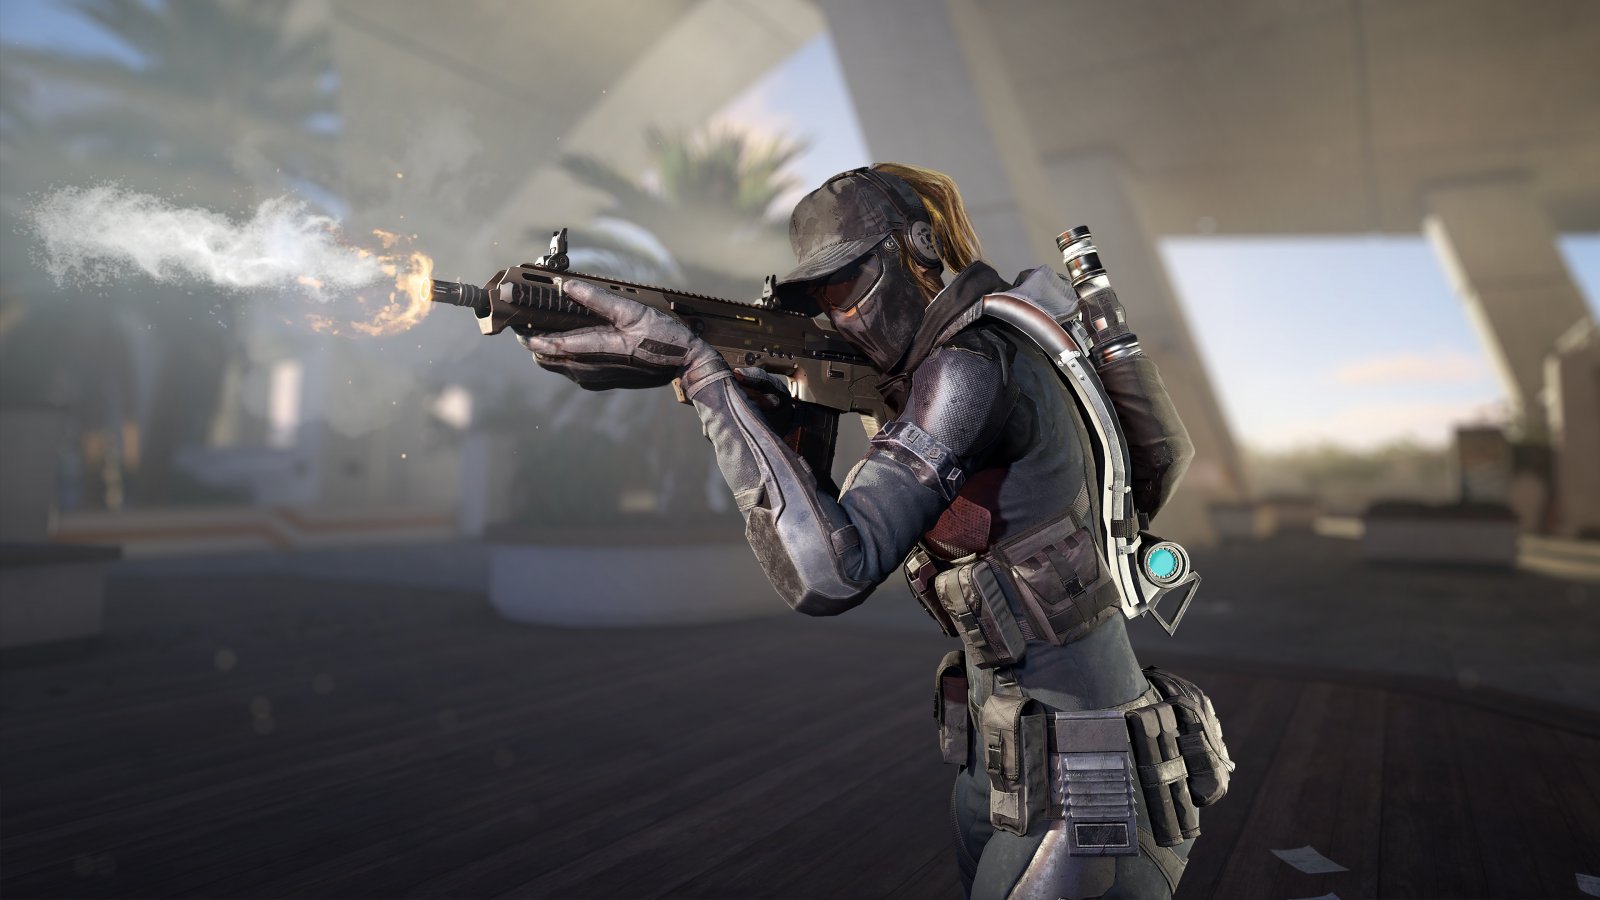 Xdefiant, video di gameplay da 12 minuti per lo sparatutto Ubisoft